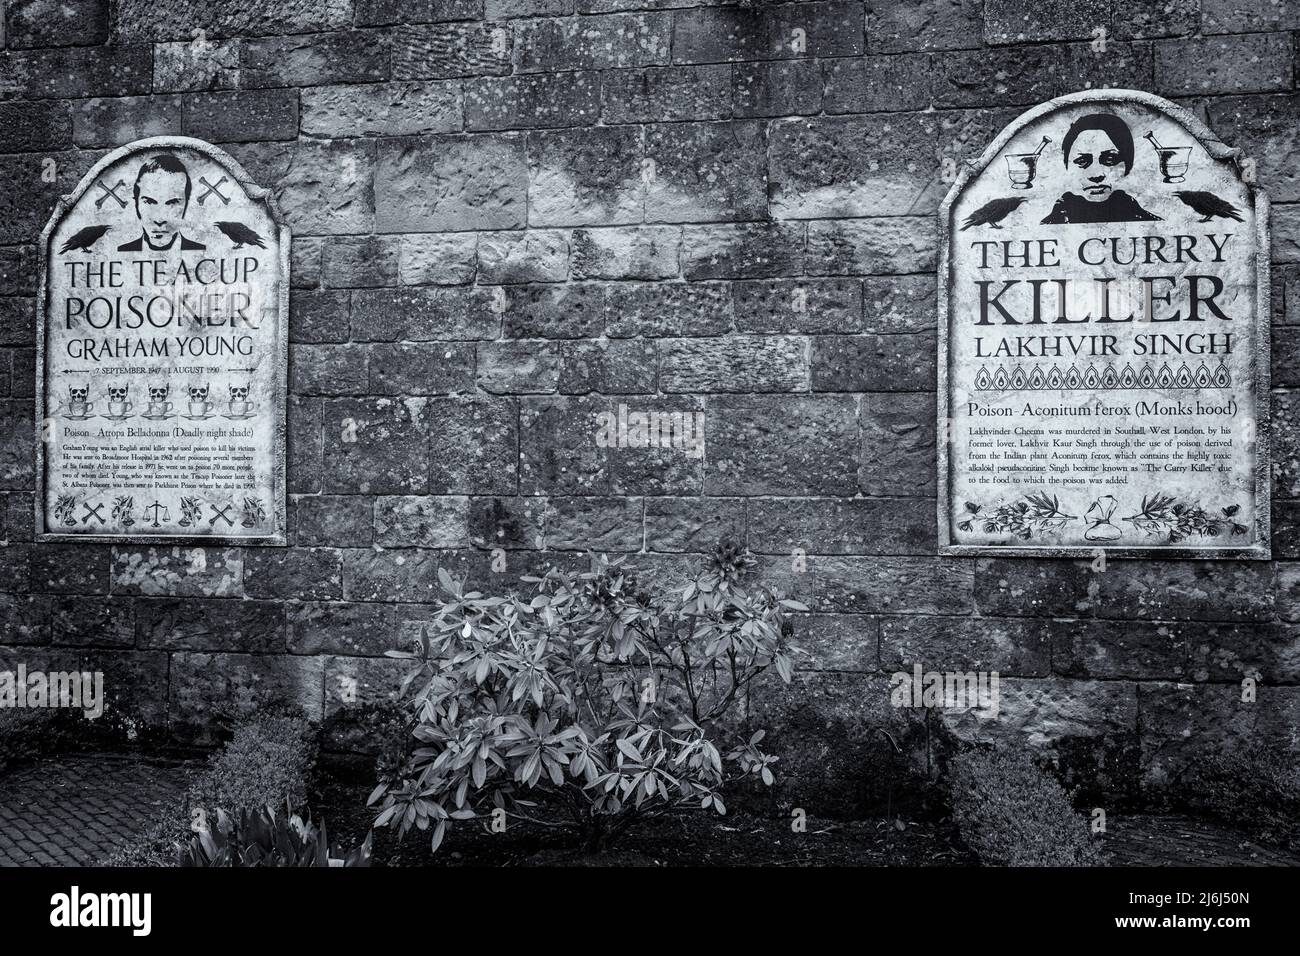 Détails du Cury Killer et du Teacup Poisoner dans le jardin de poison dans les jardins d'Alnwick à Alnwick, Northumberland, Royaume-Uni, en avril Banque D'Images